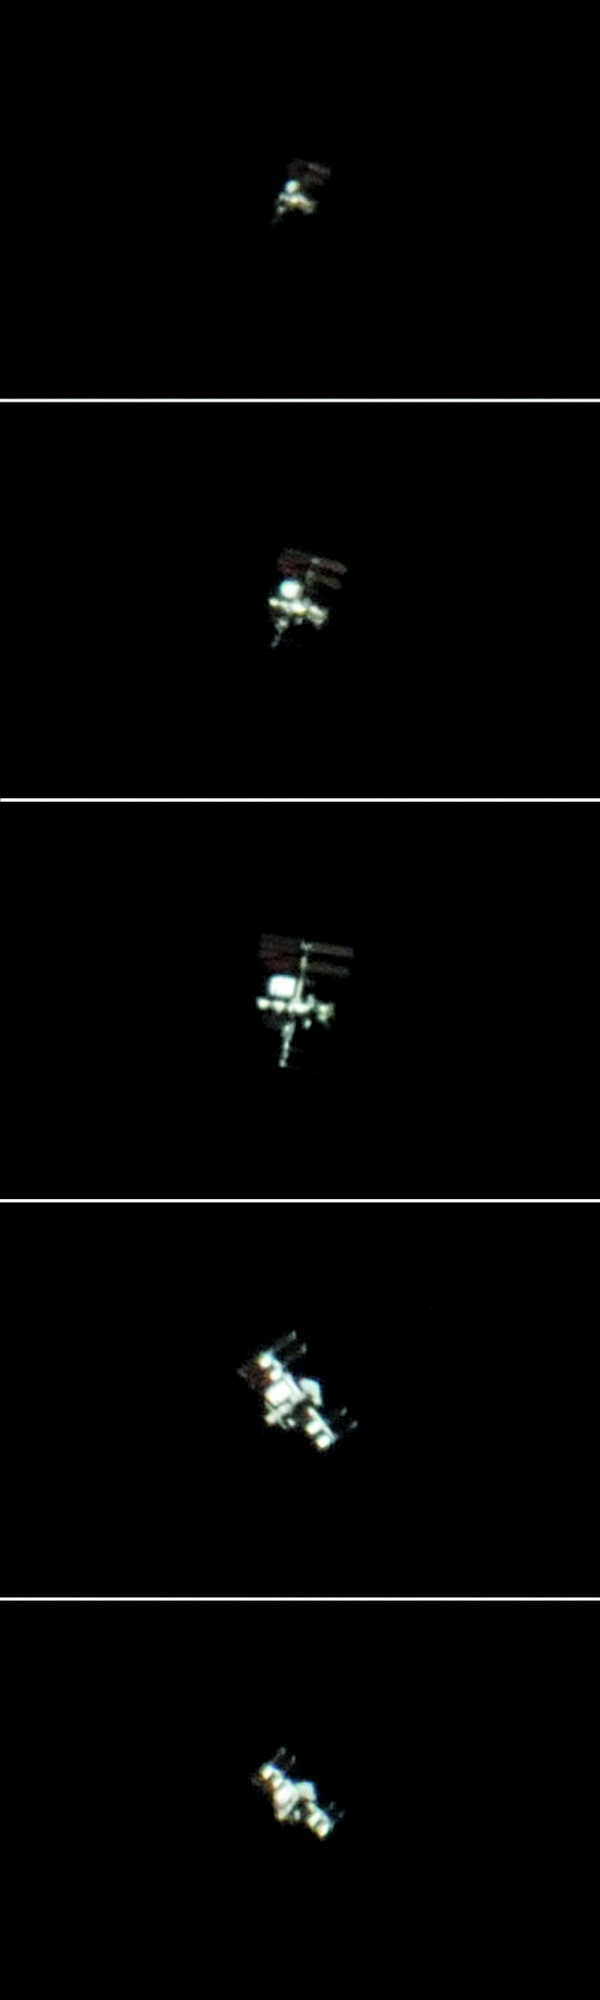 Die ISS scharf fotografieren | heise online